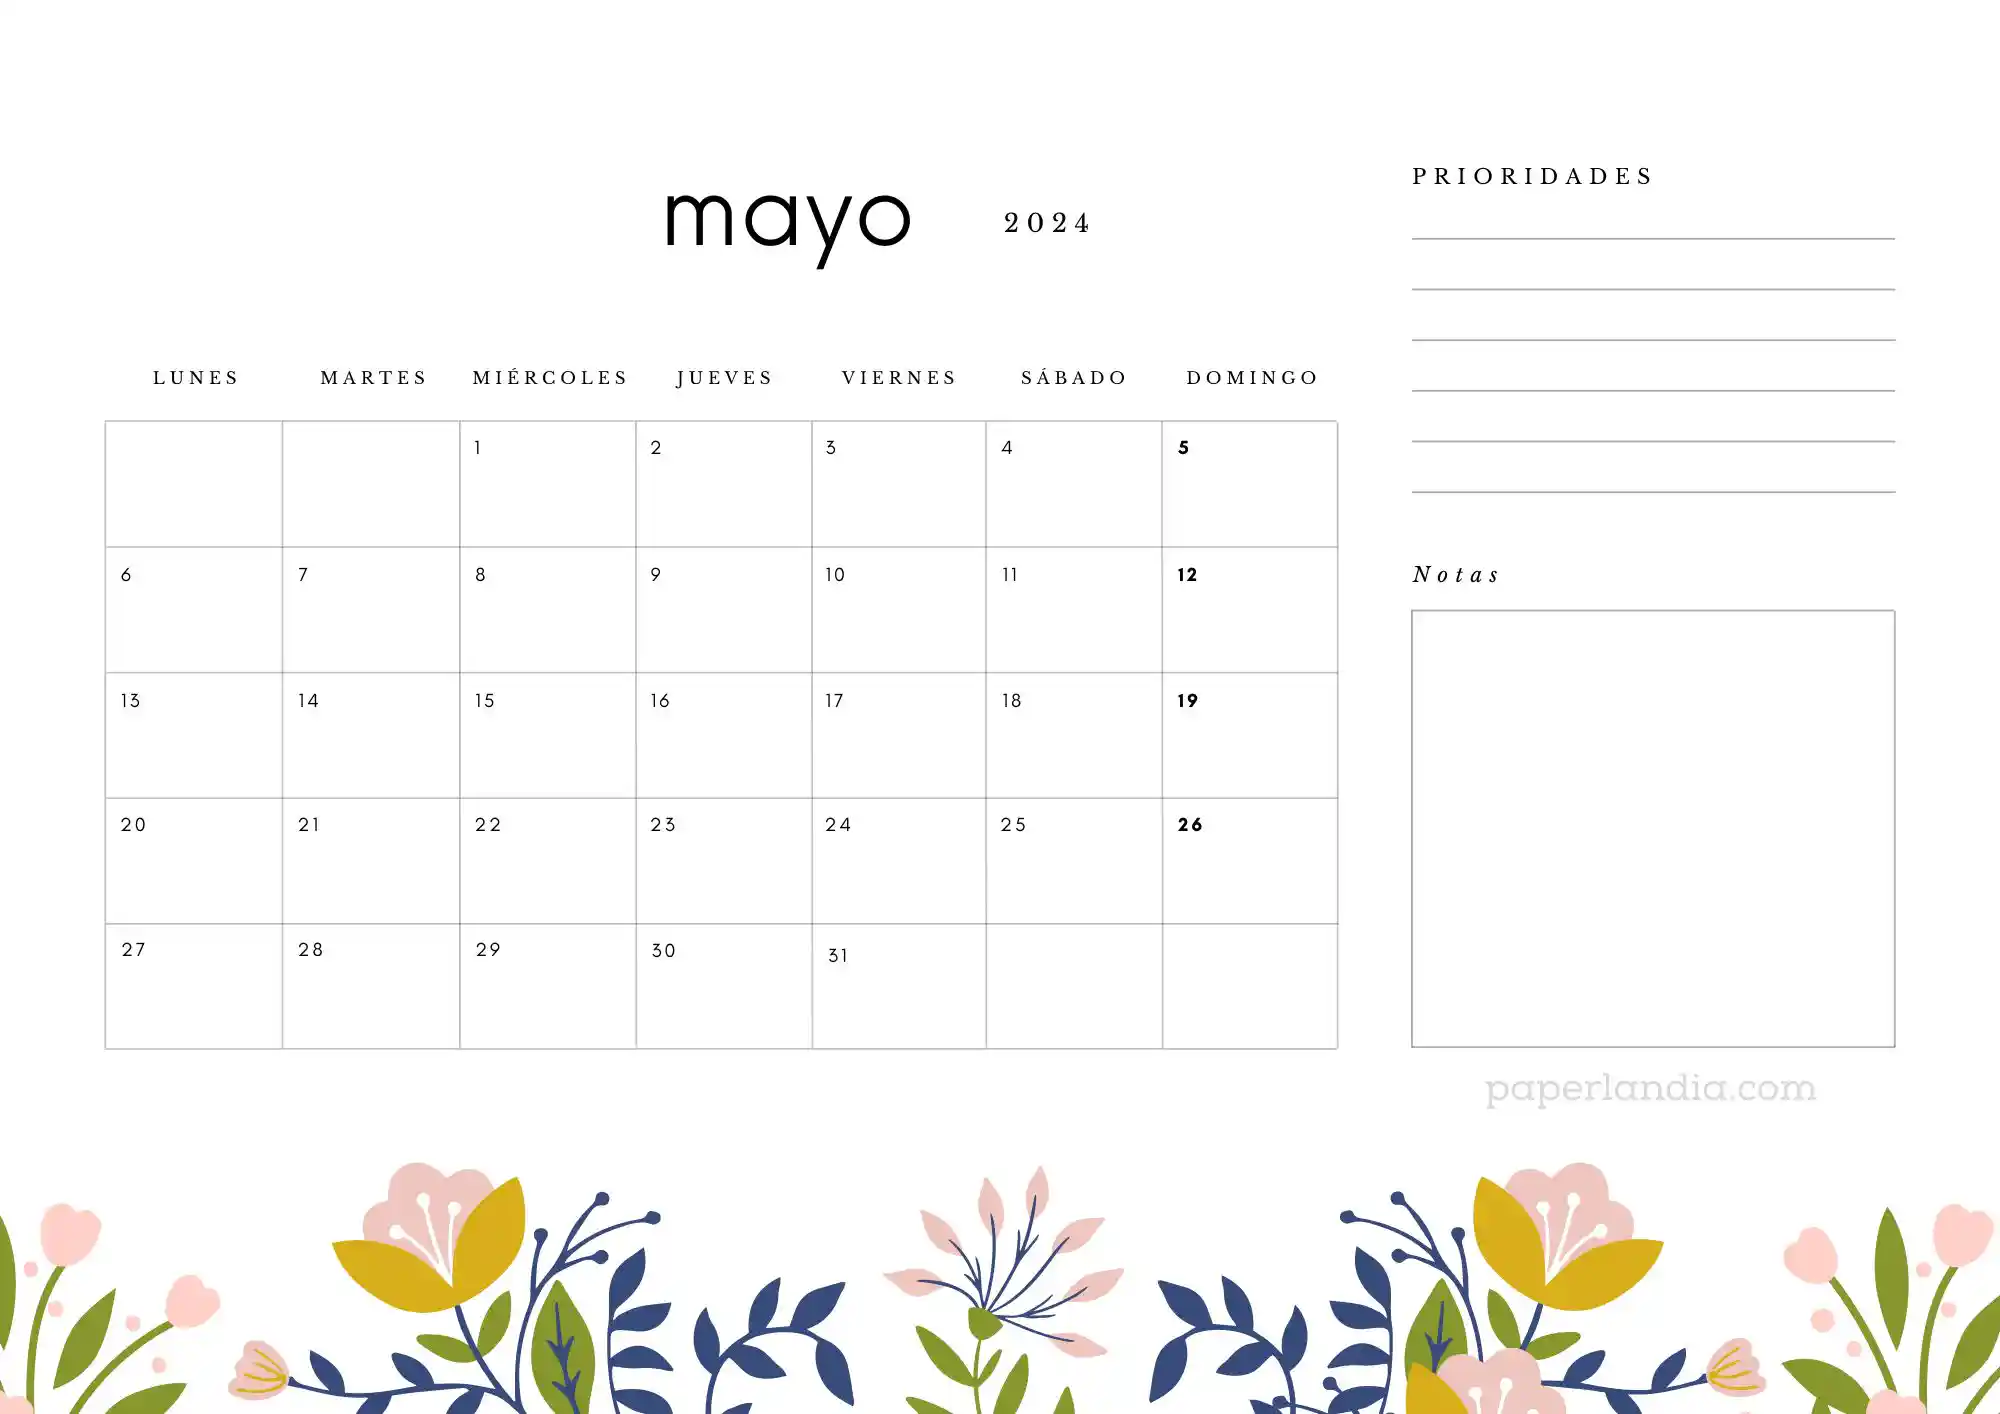 Calendario mayo 2024 horizontal con prioridades notas y flores escandinavas